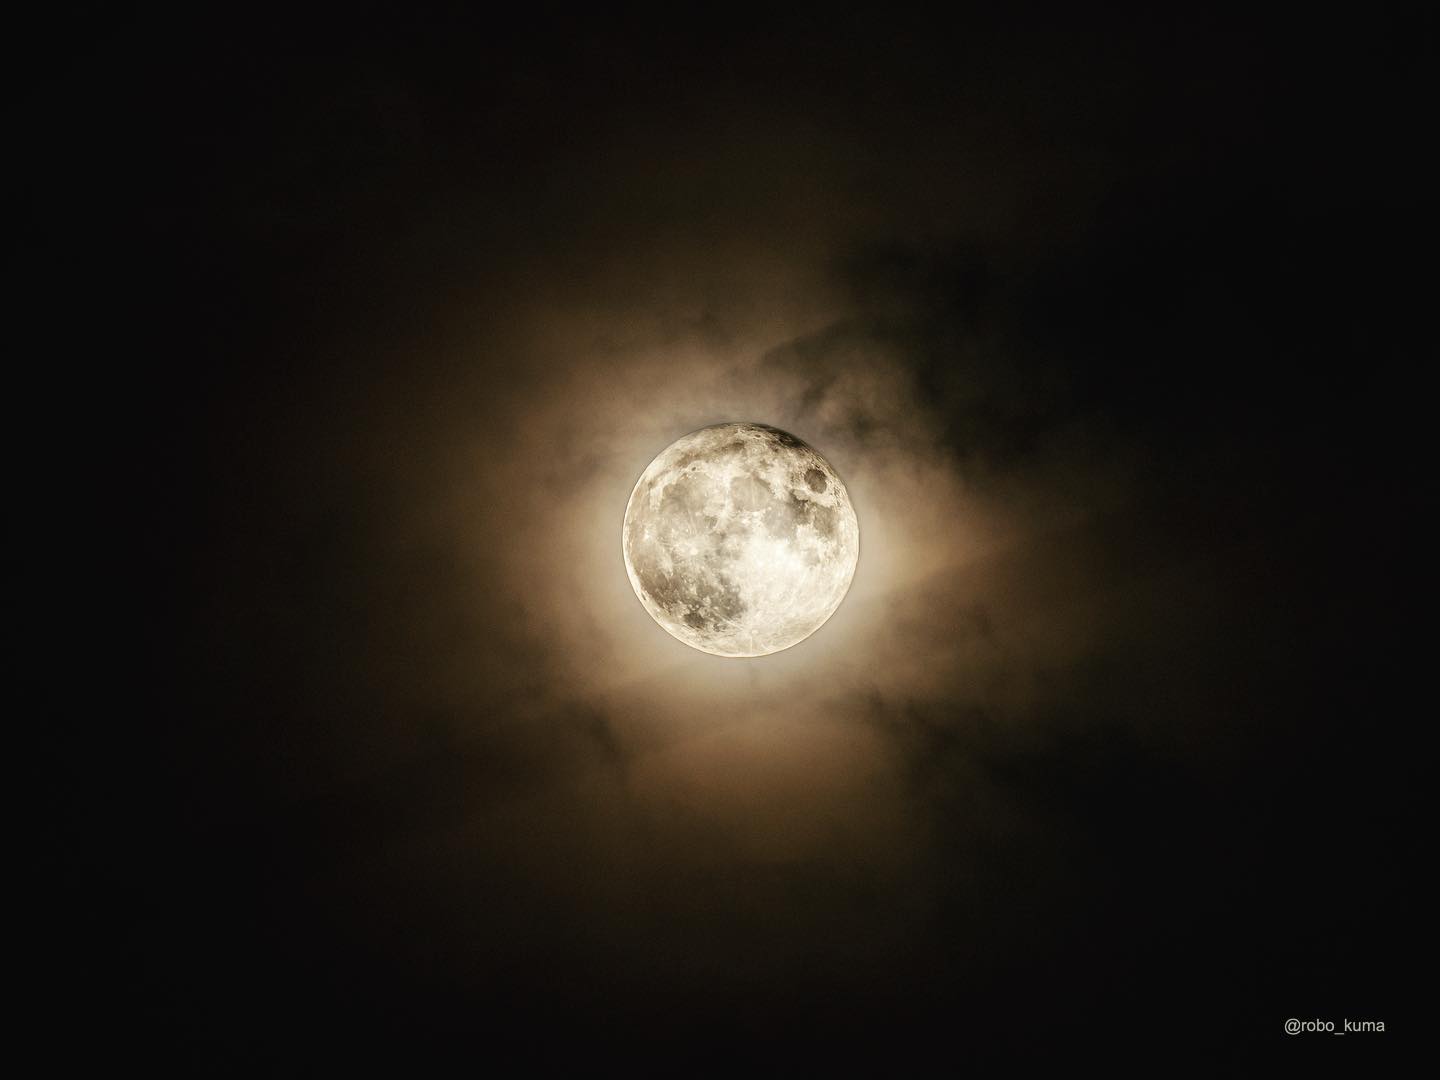 8月の満月「スタージョンムーン」。 蒸し暑さも満月の輝きには勝てない。(OLYMPUS OM-D E-M1X + M.ZUIKO DIGITAL ED 300mm F4.0 IS PRO)